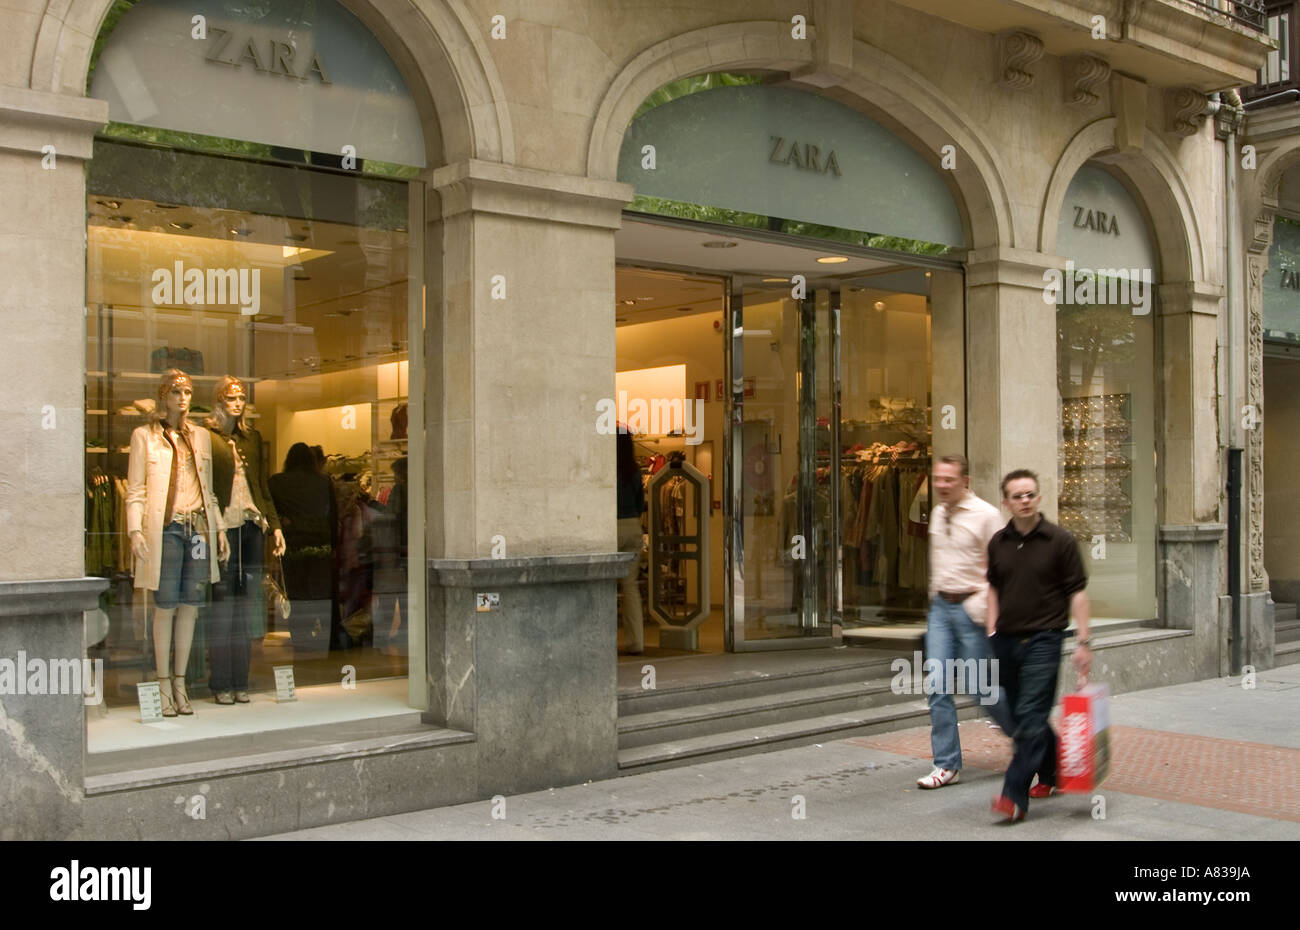 Bilbao Bizkaia, Spanien, Ansicht einer Zara Filiale in einer belebten  Einkaufsstraße Stockfotografie - Alamy